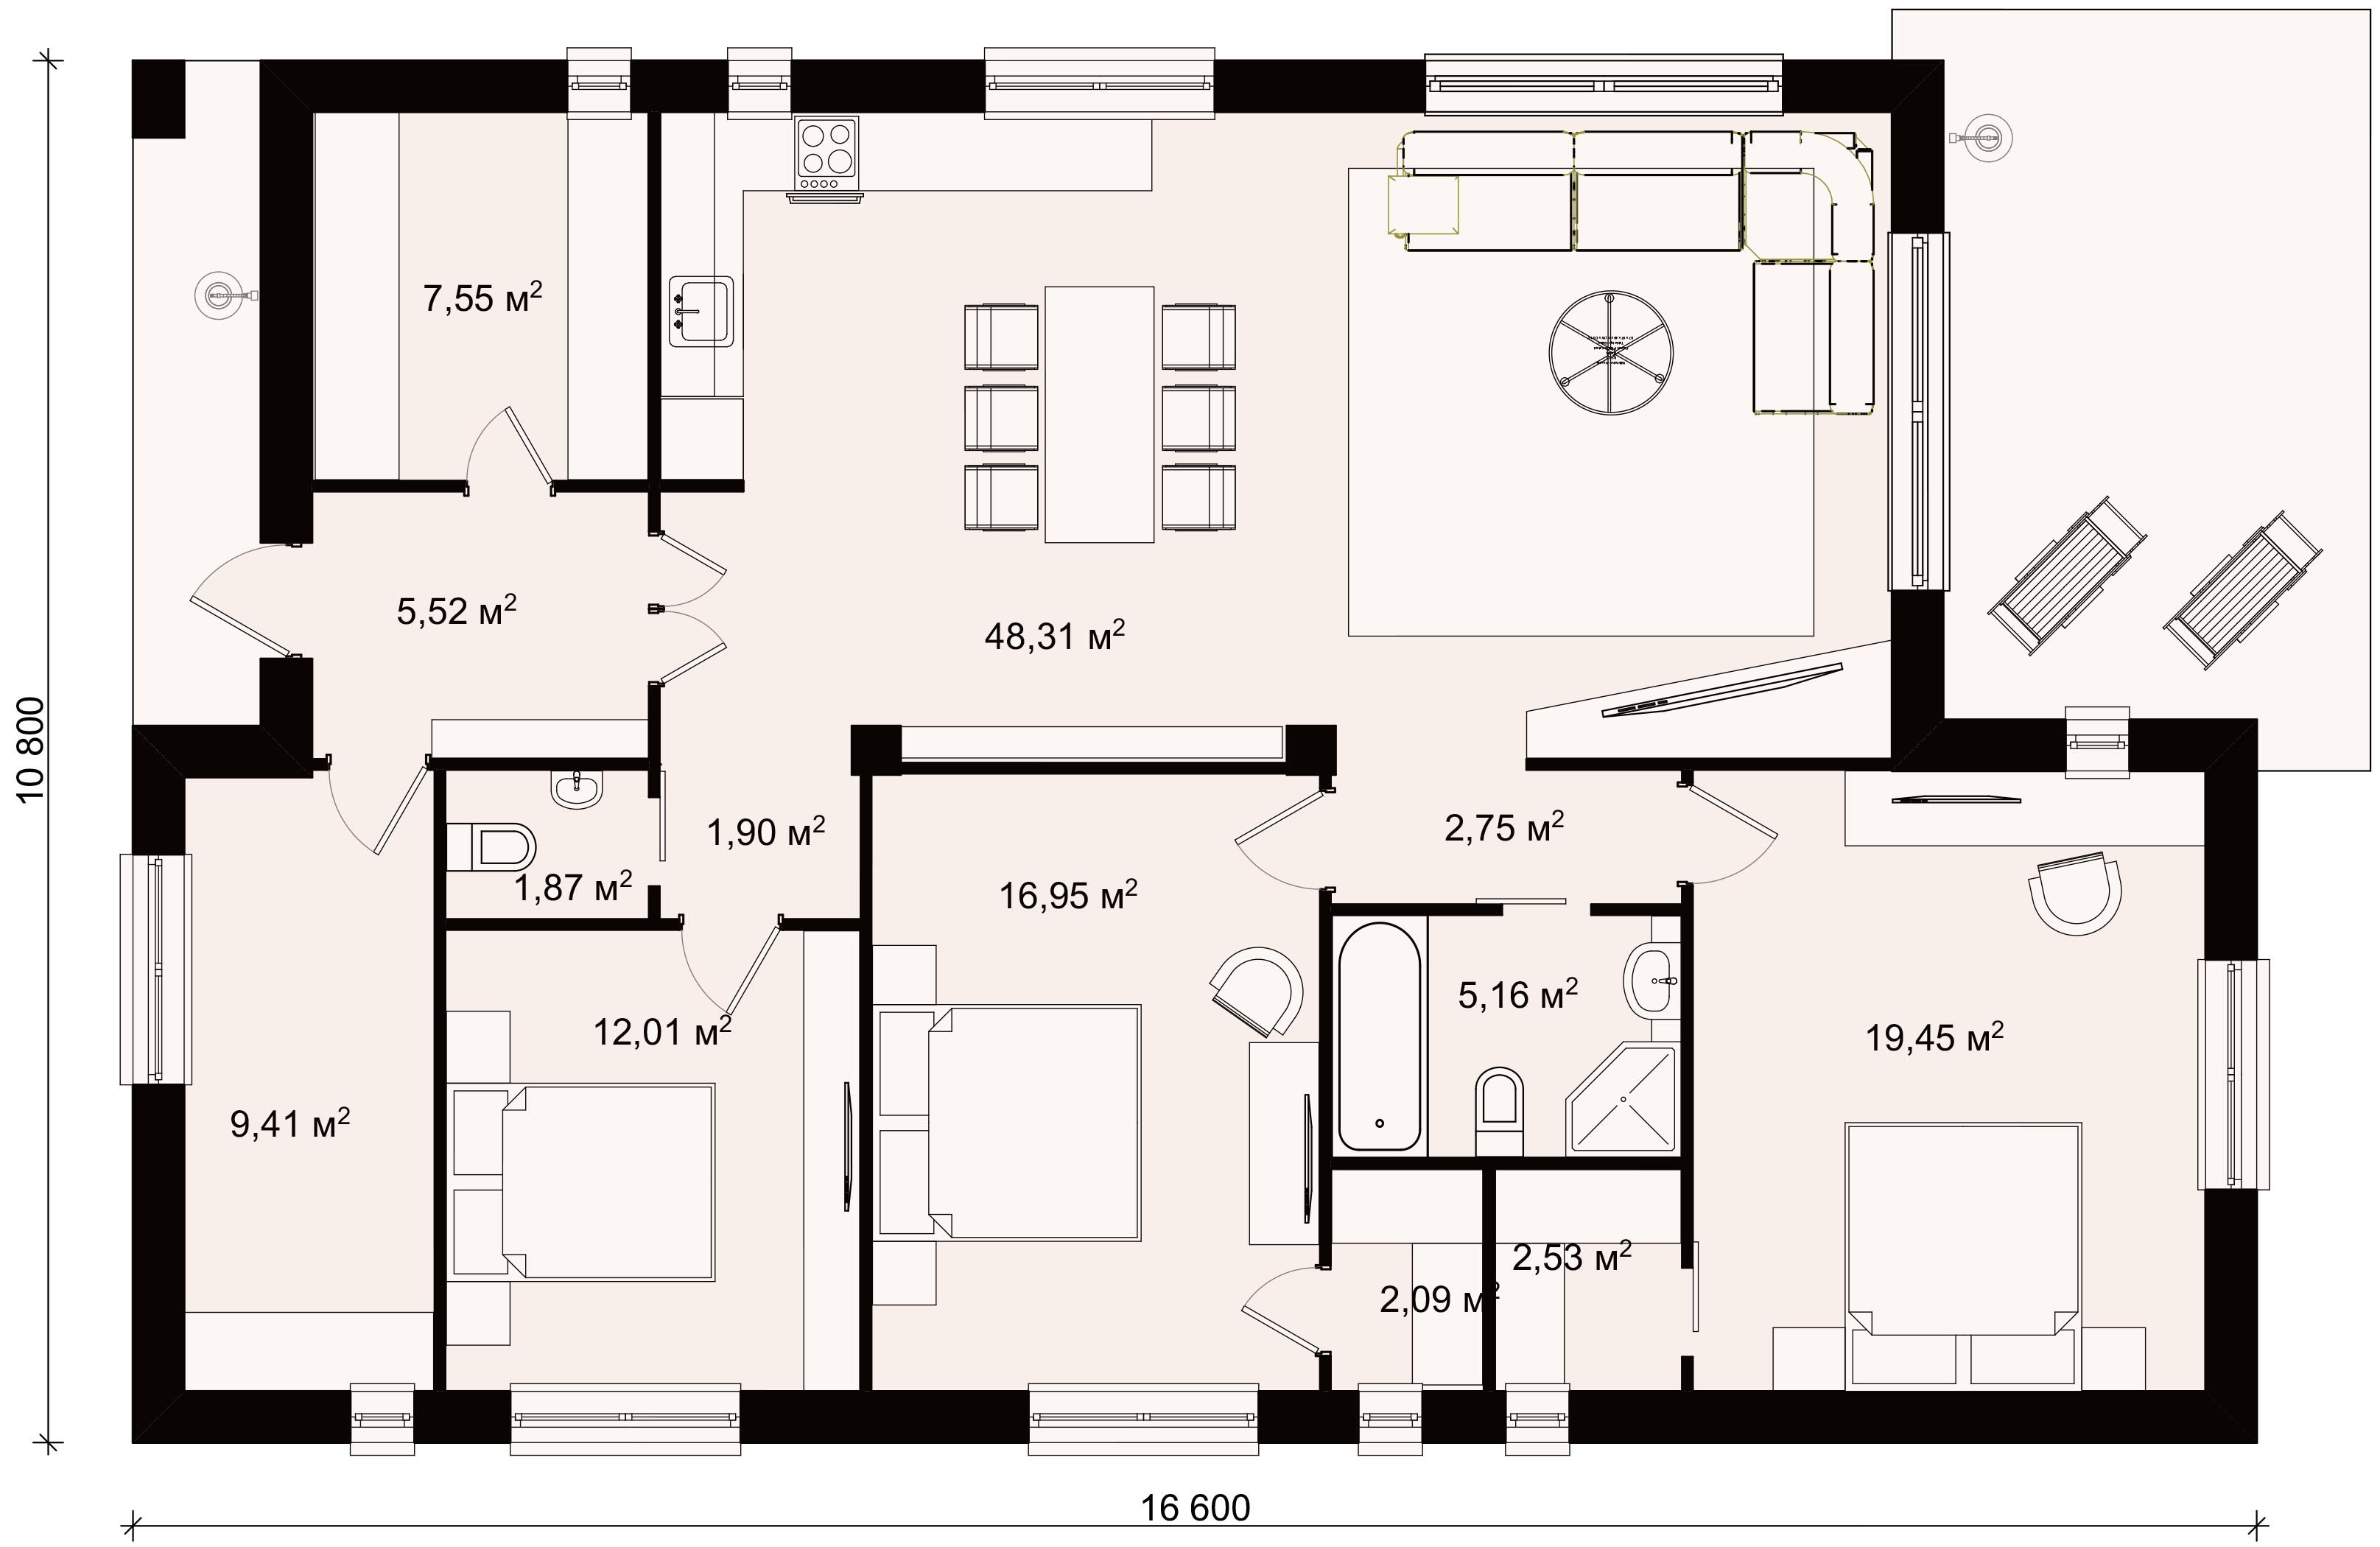 Проекты одноэтажных домов для узких участков, фото, цены, готовые и типовые. Каталог содержит планировки, планы и чертежи